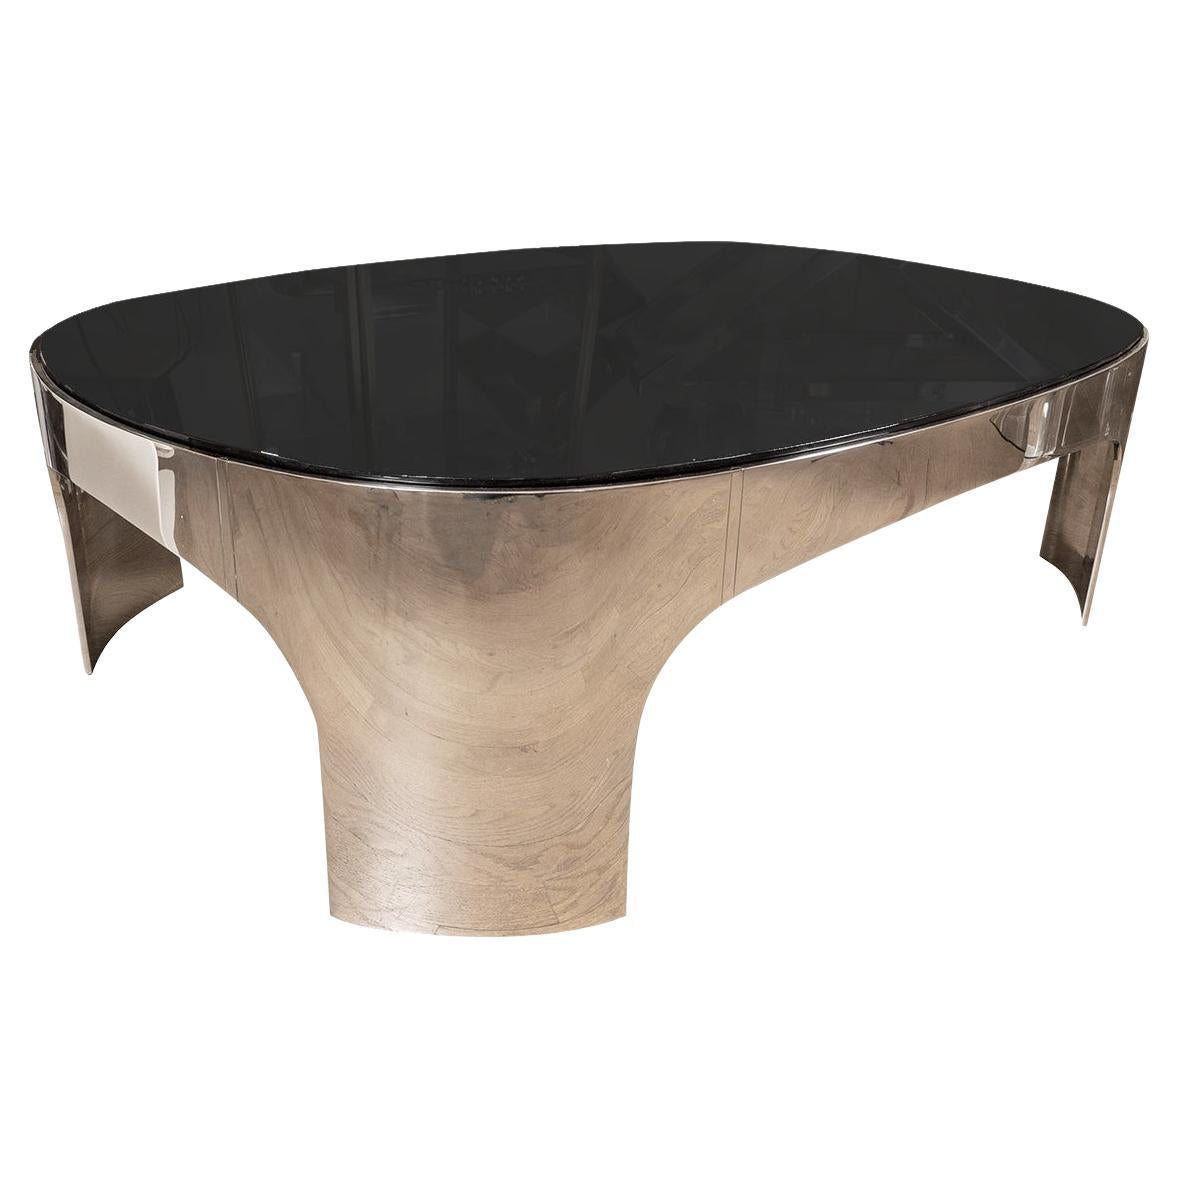 Table basse ovale en acier inoxydable poli et verre noir